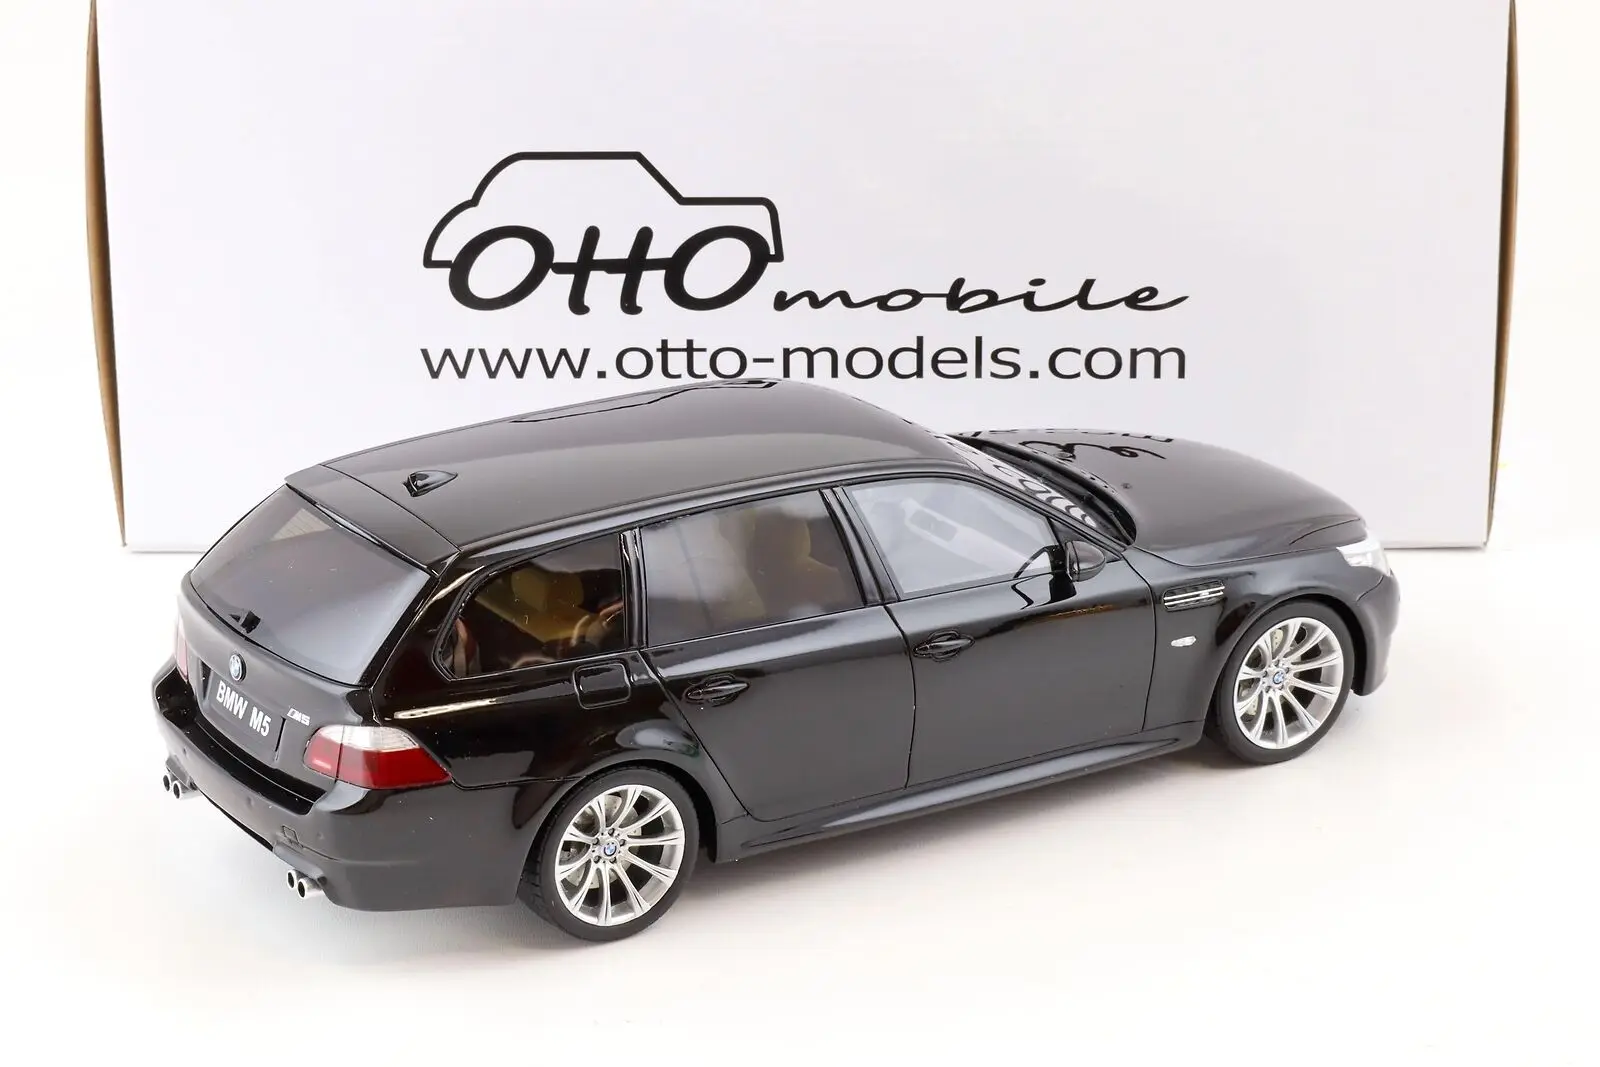 

Модель автомобиля OTTO-Mobile 1/18 5-серия M5 (E61) Touring SW универсал черный OT1020 из смолы коллекция автомобилей ограниченный выпуск хобби игрушки